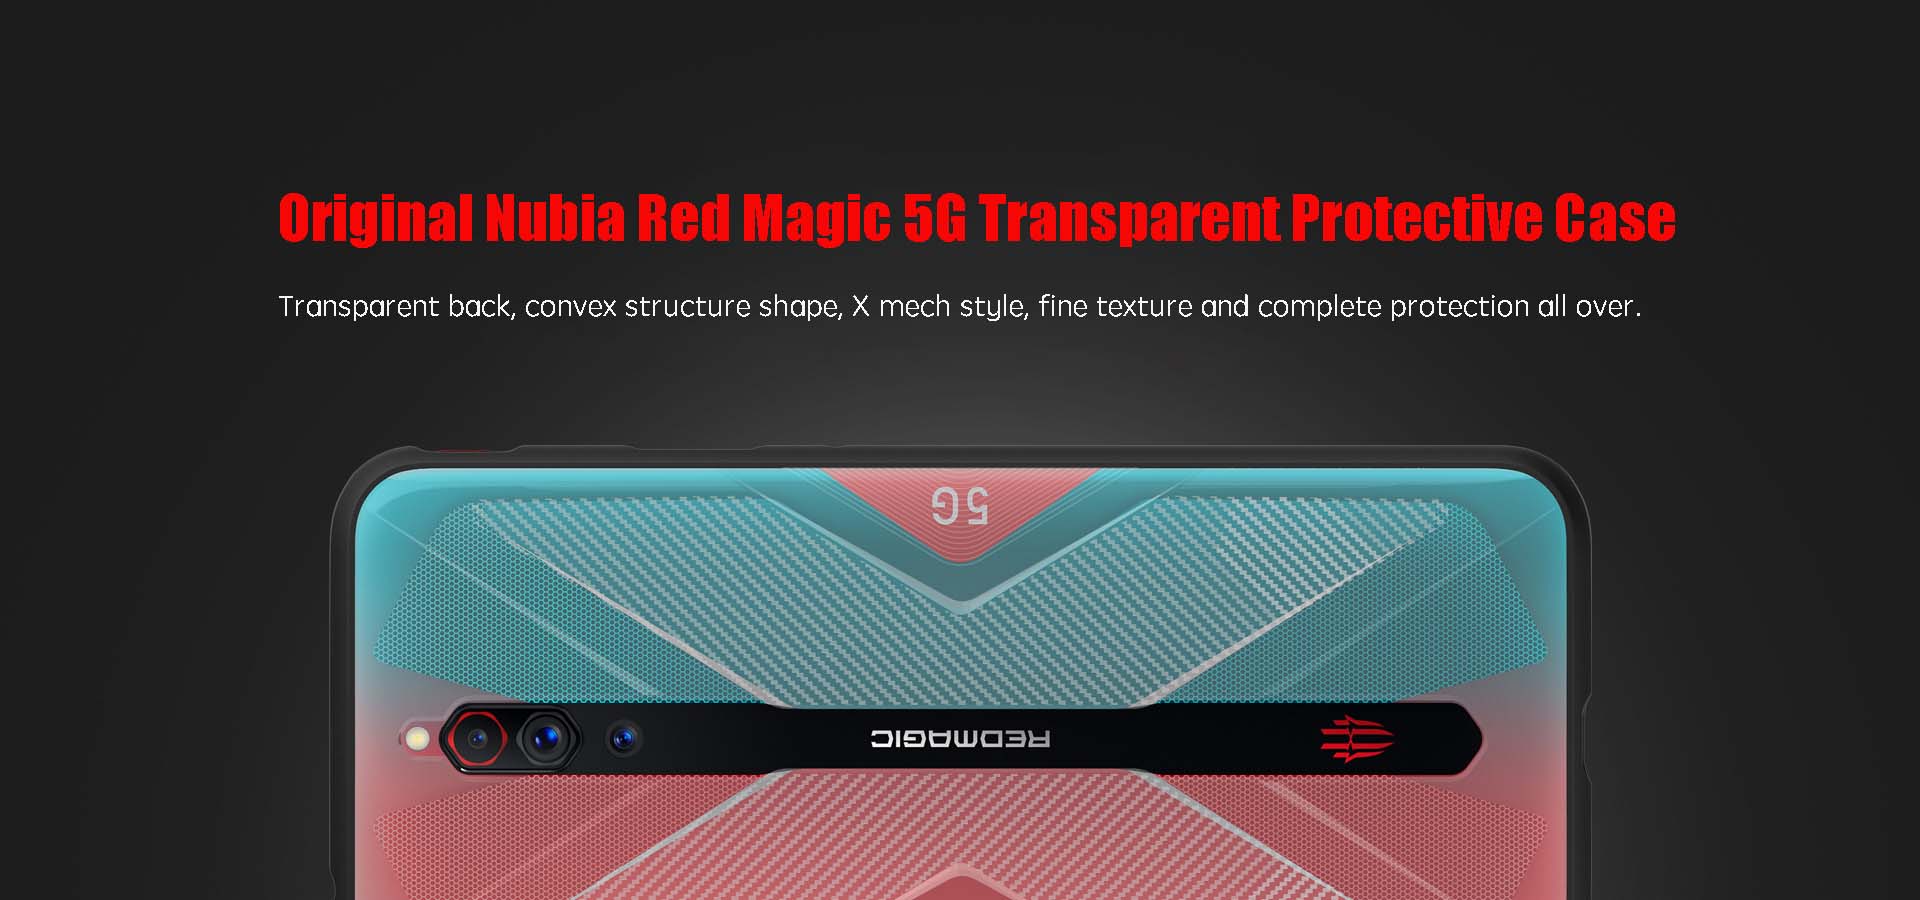 Nubia Red Magic 5G case